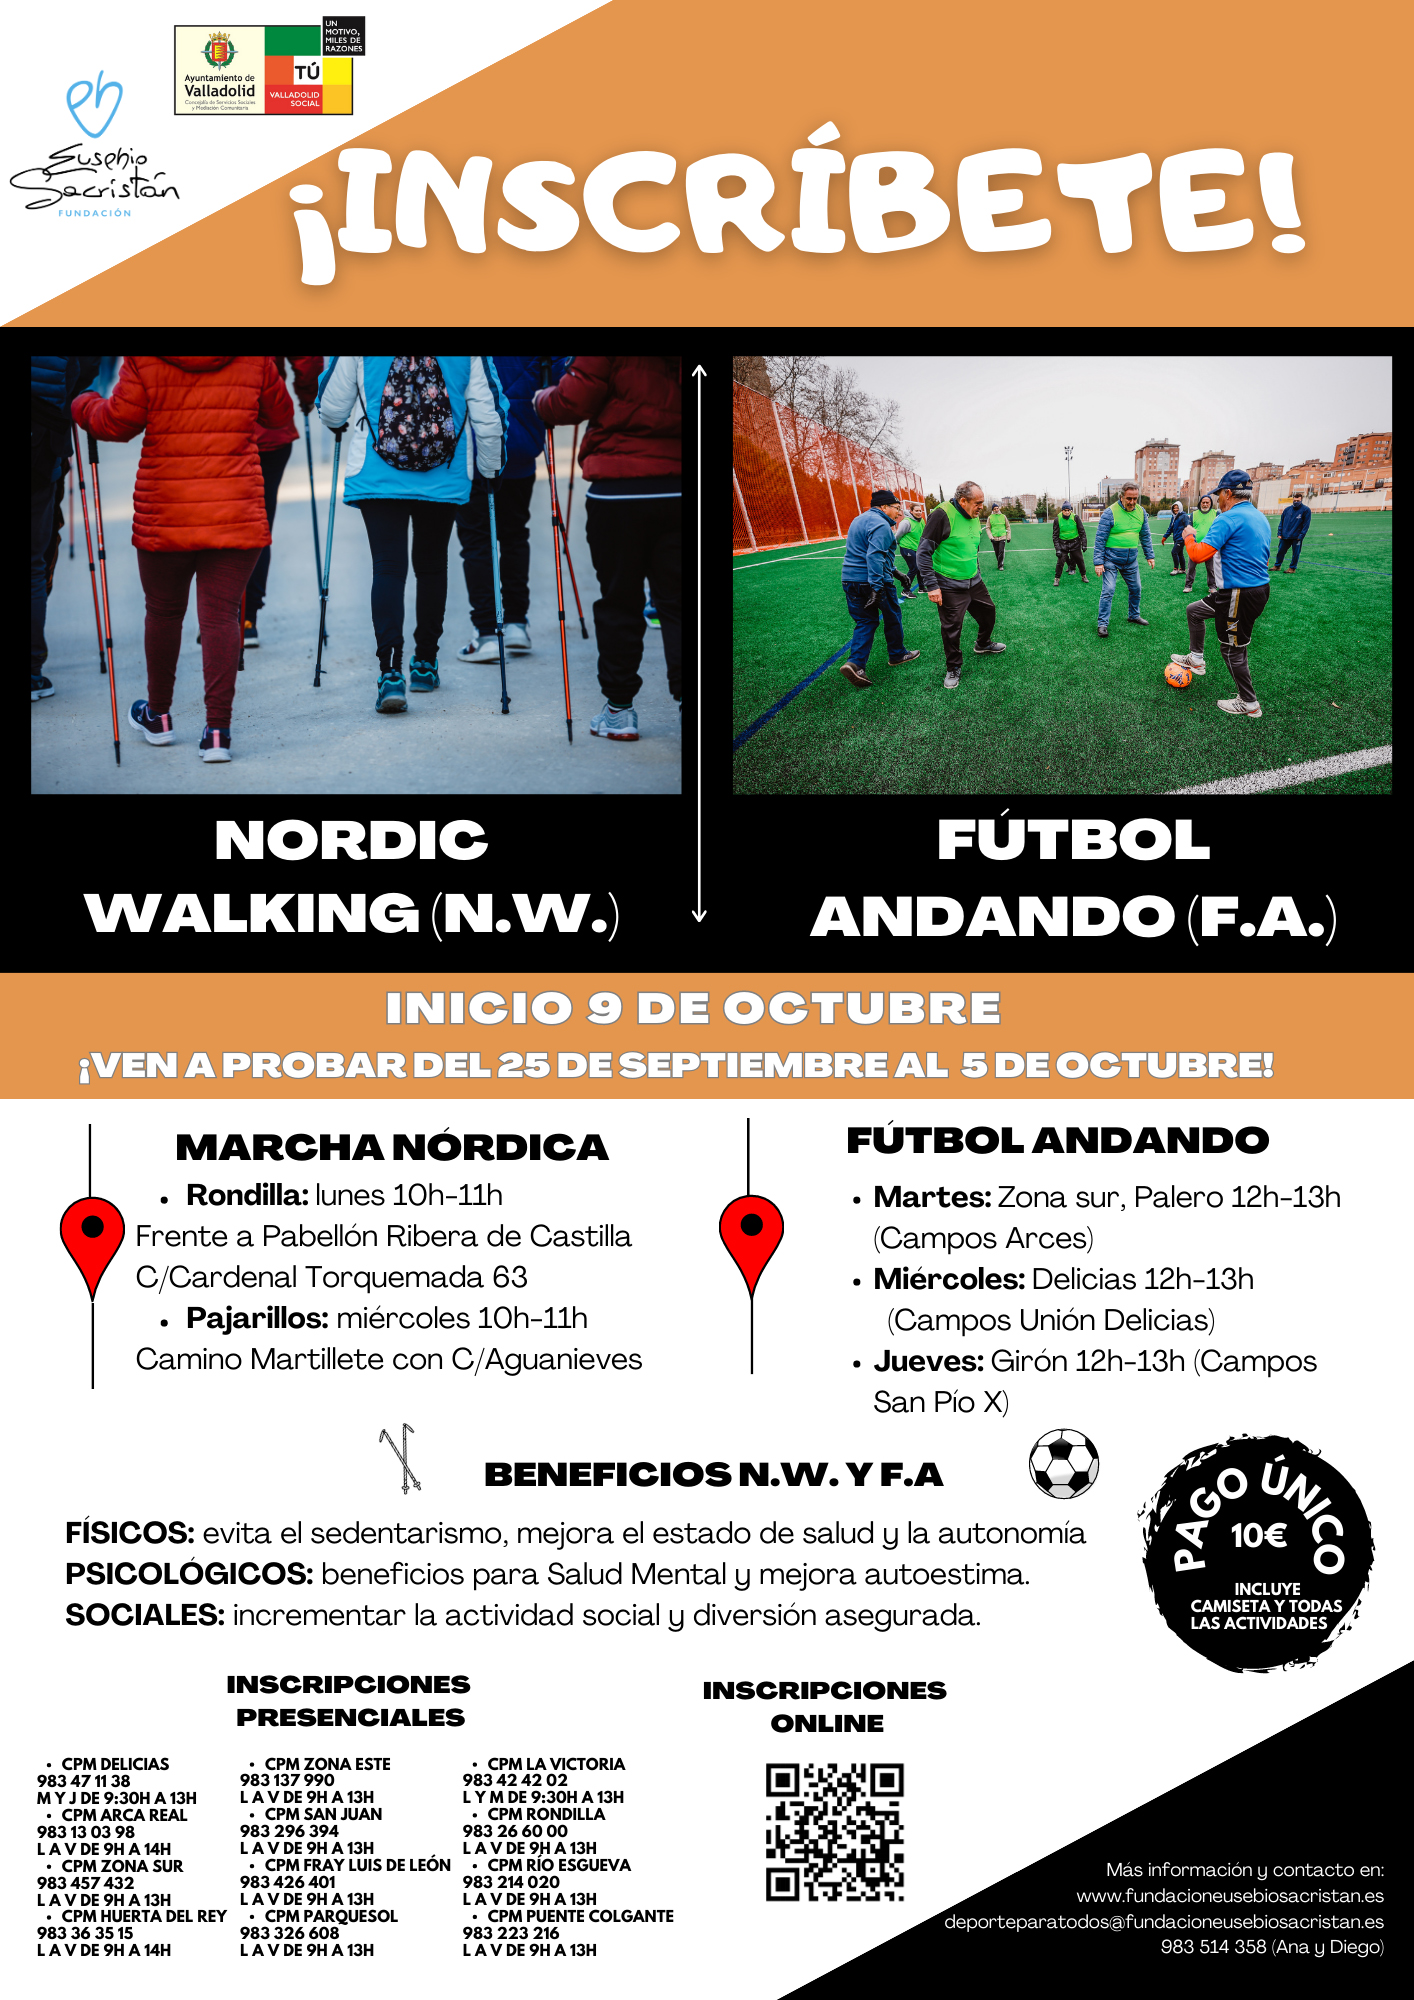 Cartel de la Marcha Nórdica y el Fútbol Andando, para que veas los puntos de inscripciones presenciales y los beneficios que aportan estos dos deportes.